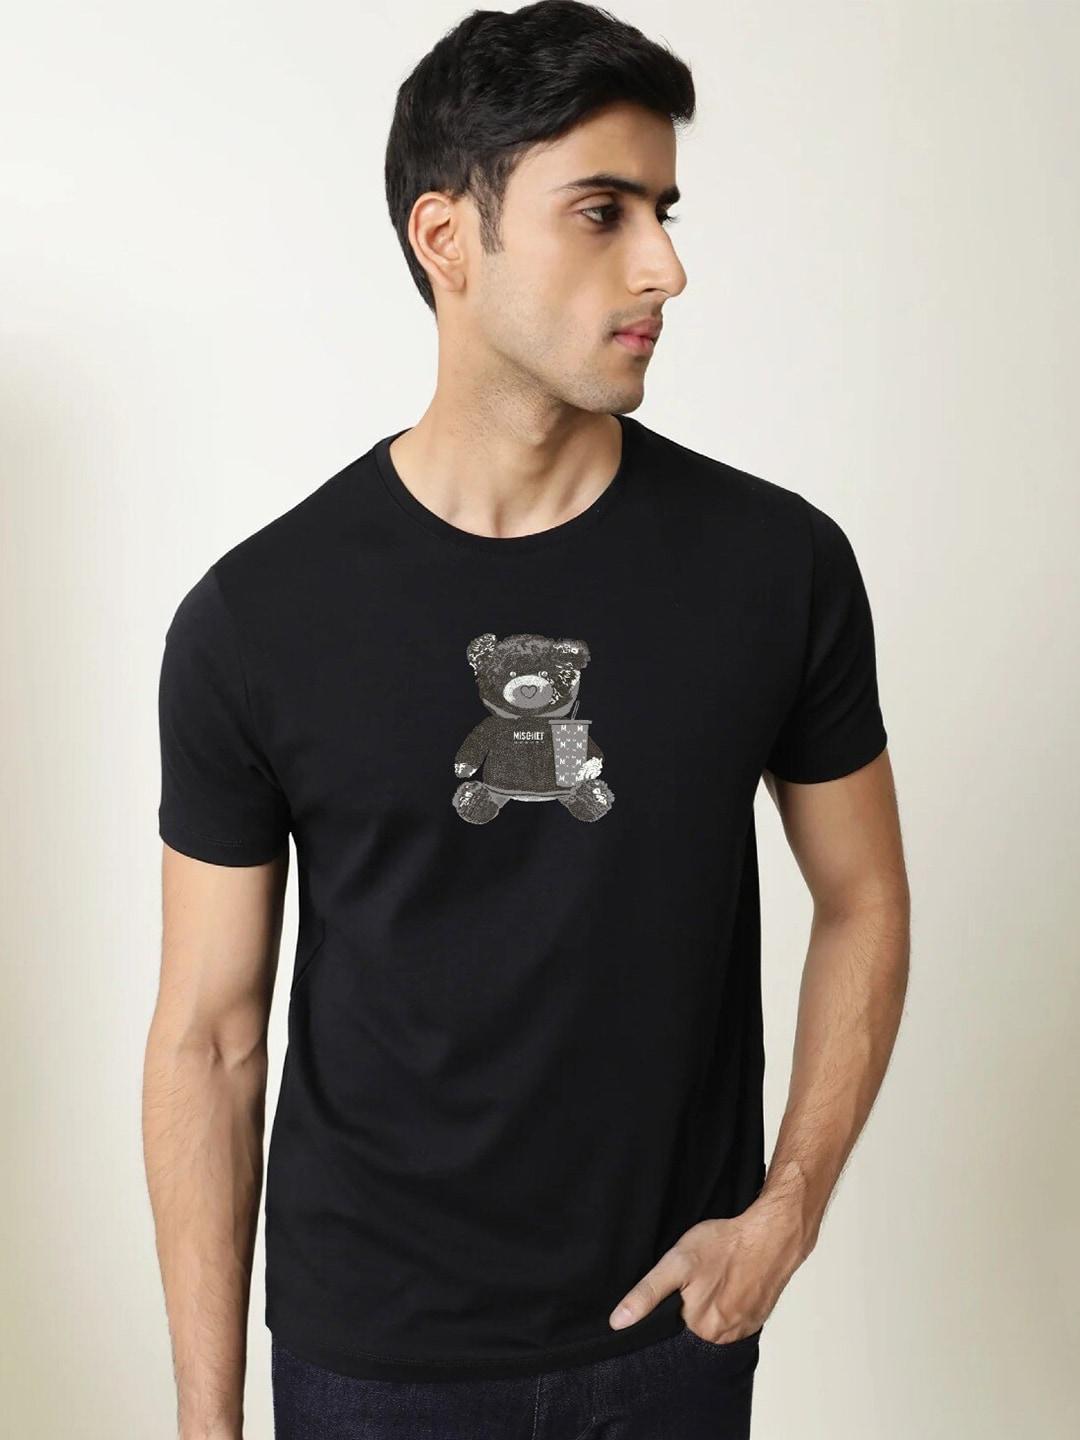 mischief-monkey-men-black-printed-v-neck-pure-cotton-applique-t-shirt